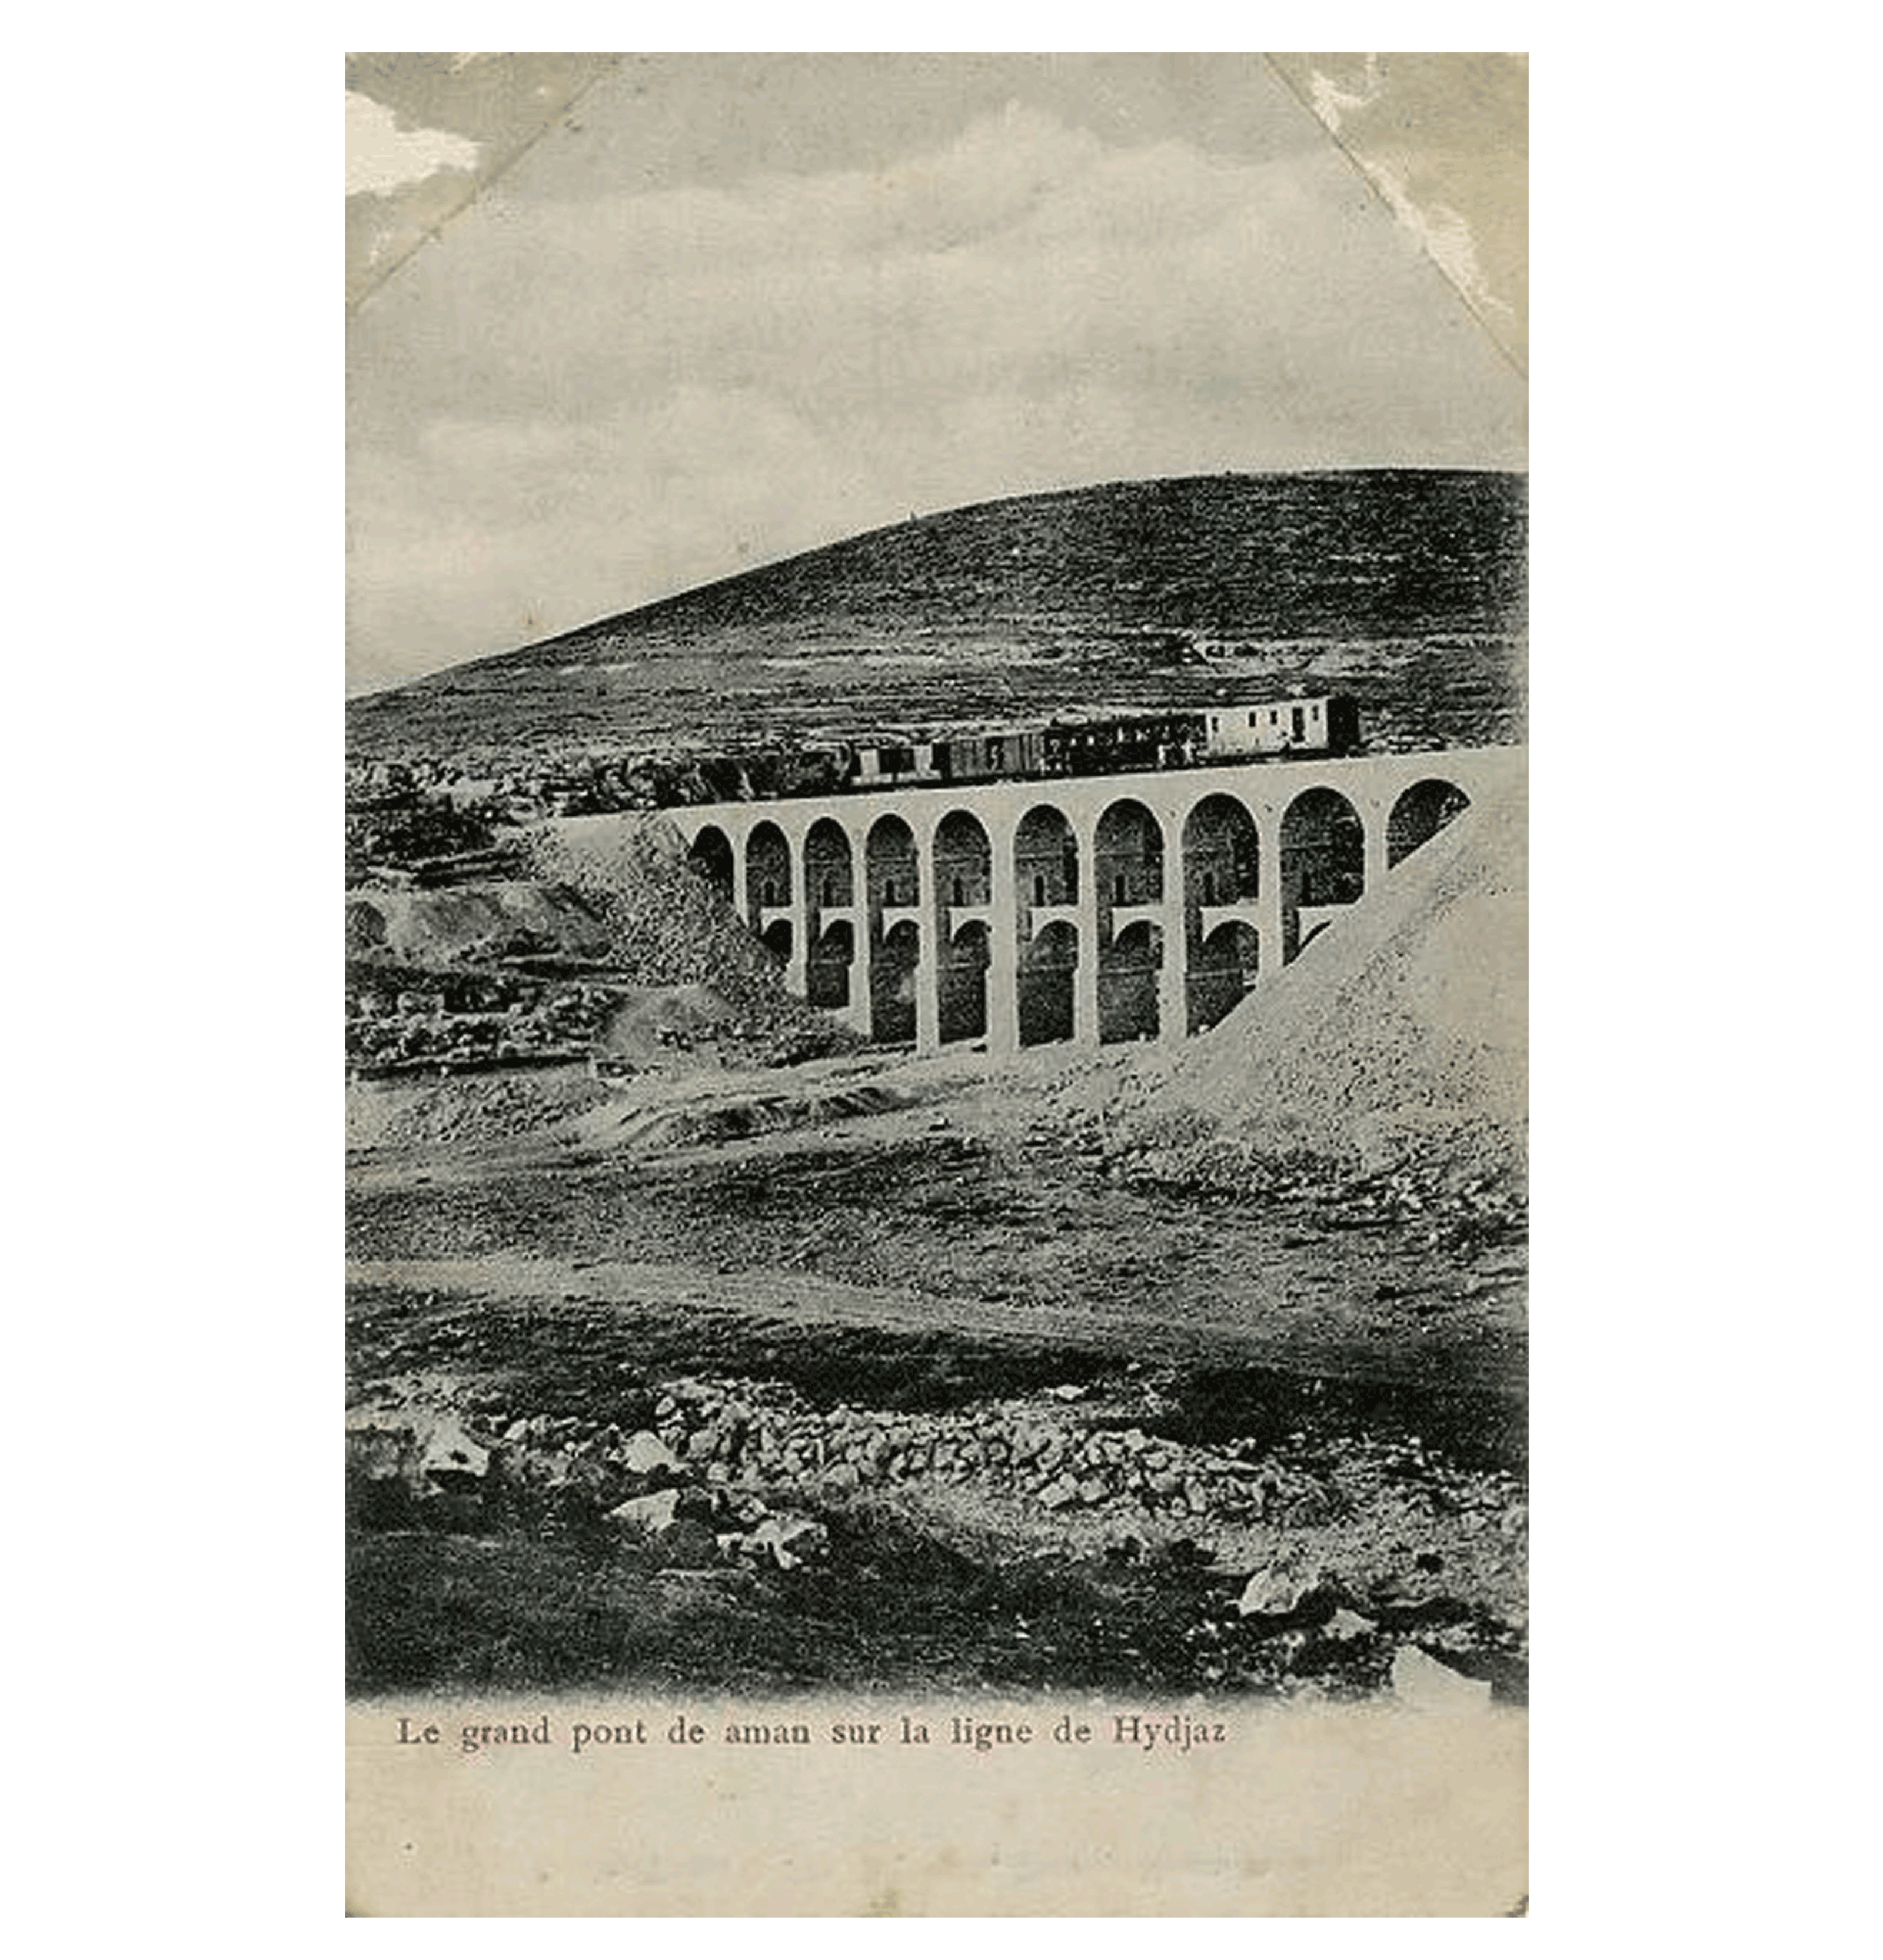 Historical image of Hijaz Railway across Aman